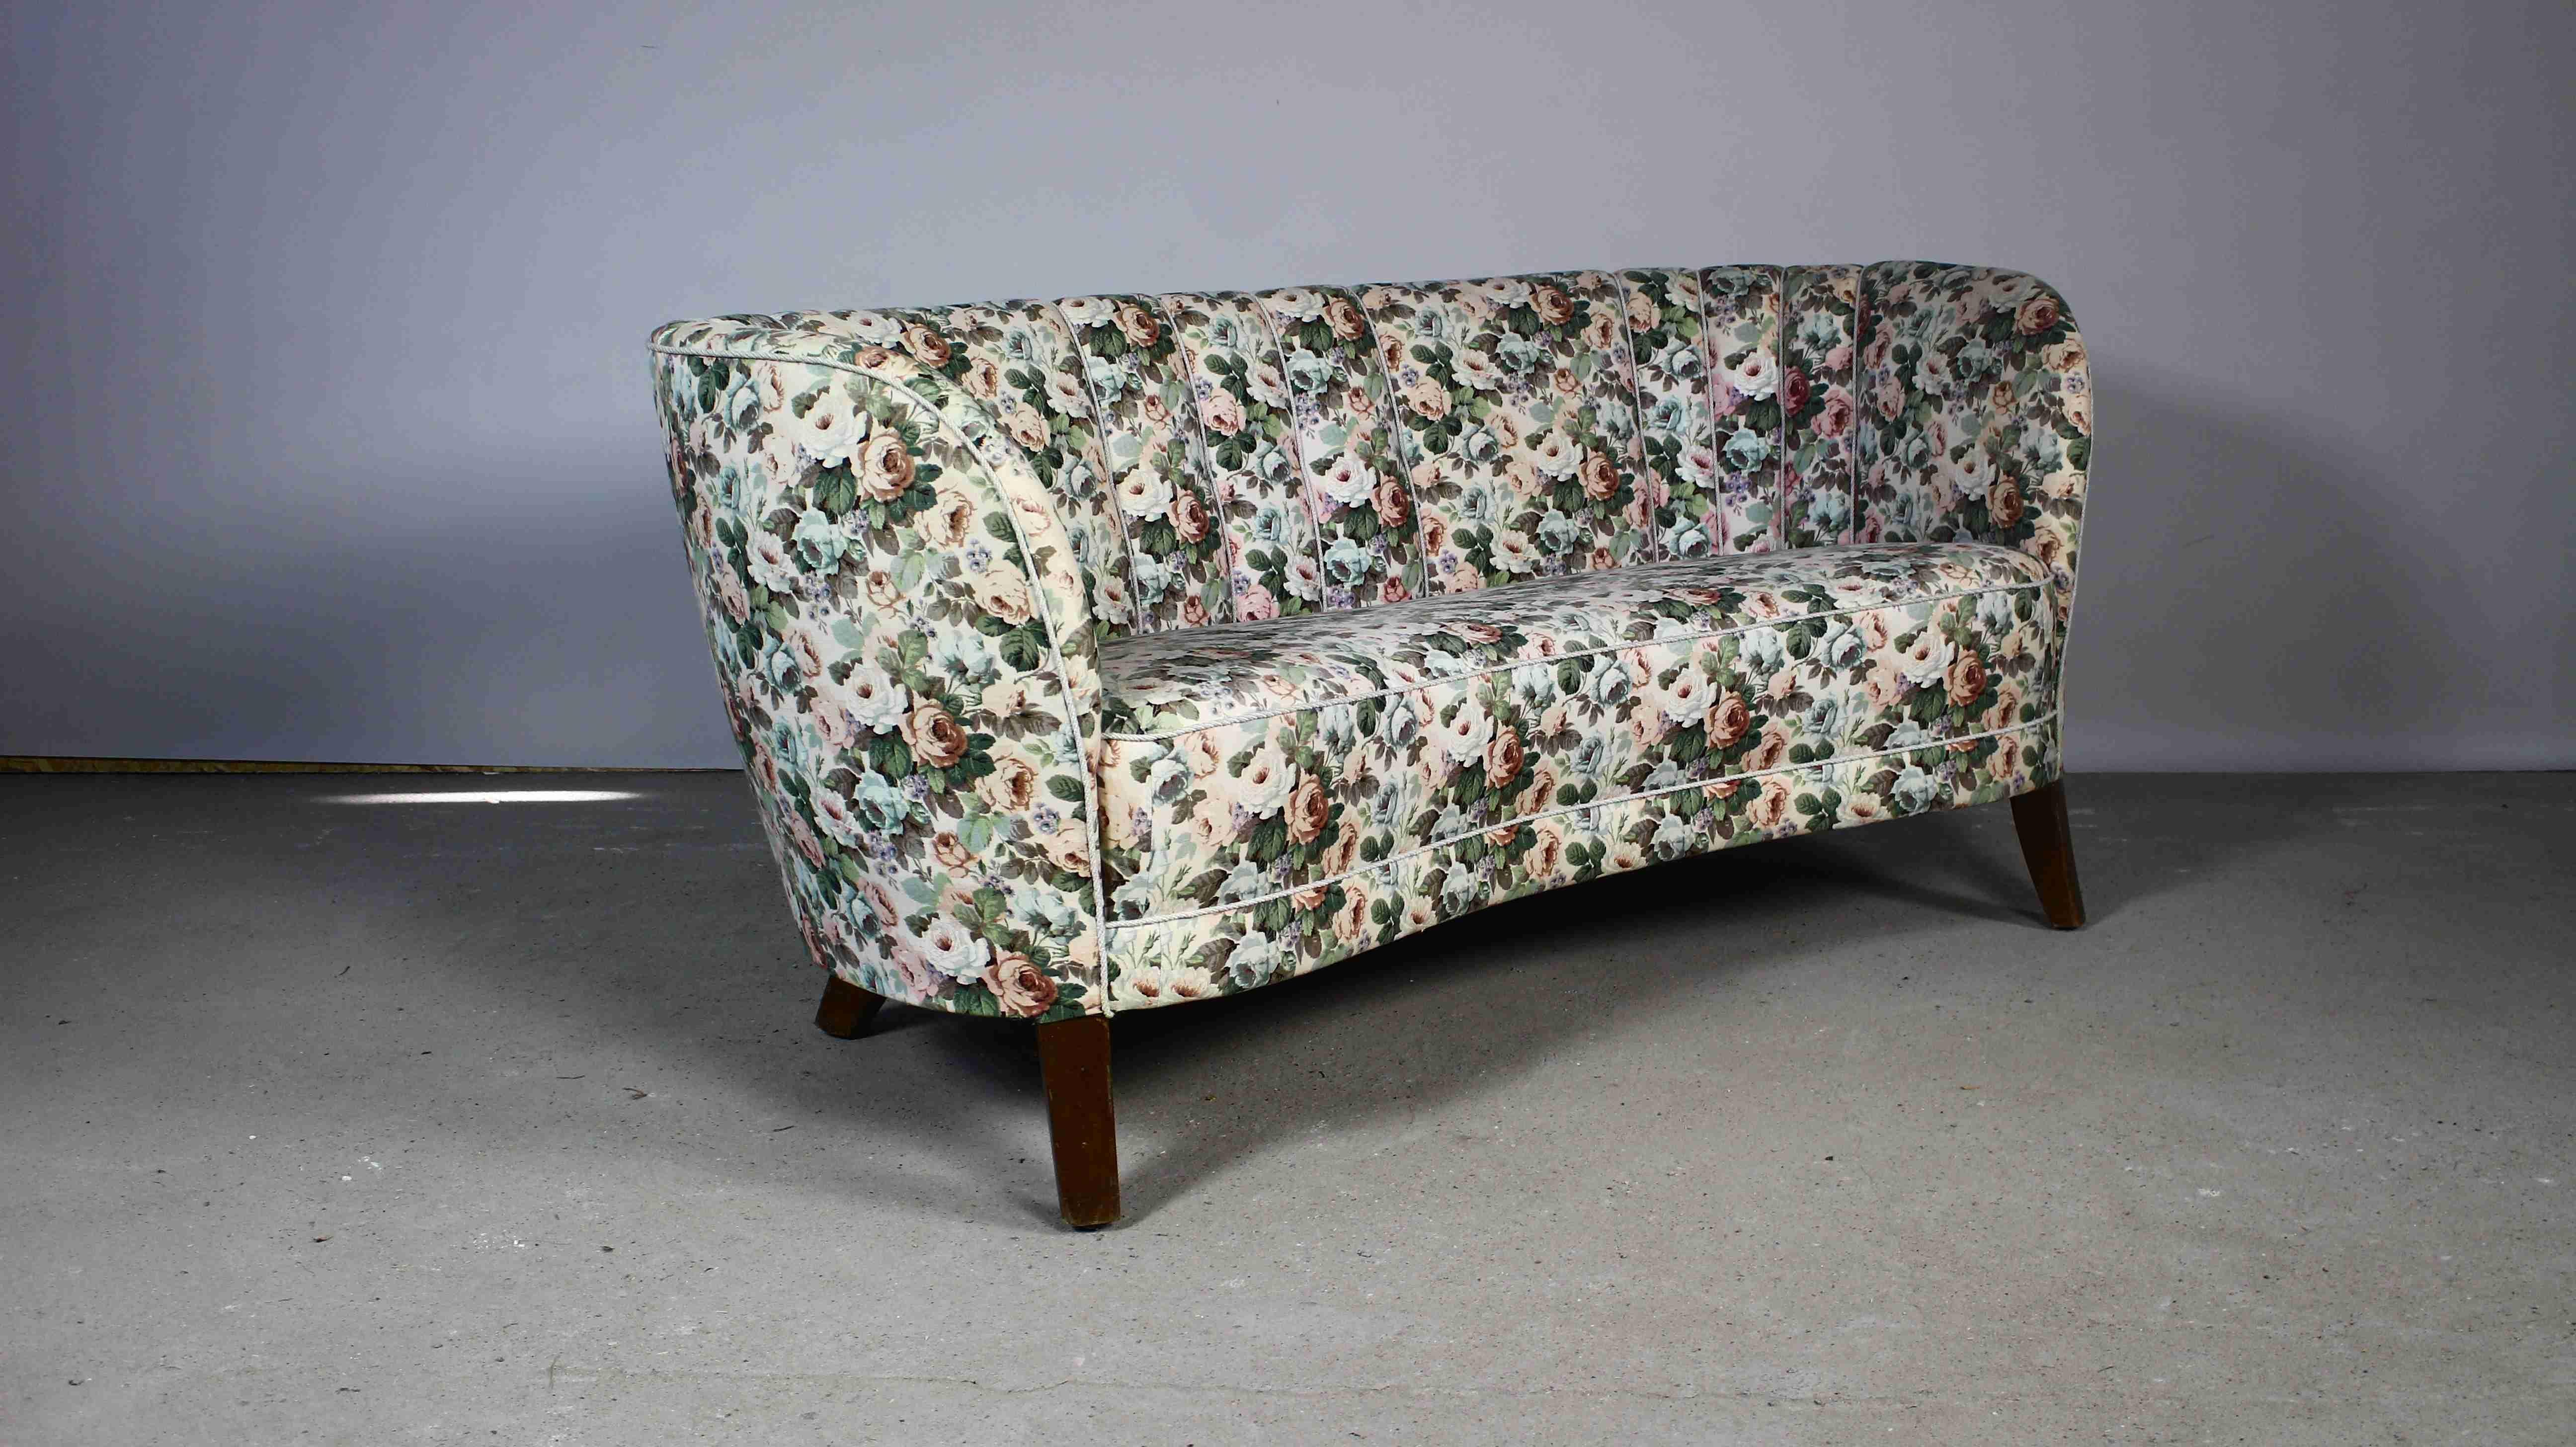 Dieses Sofa aus den frühen 1950er Jahren stammt von Slagelse Mobelvaerk und wurde in Anlehnung an den dänischen Architekten der Moderne, Flemming Lassen, gefertigt.
Die definierten Linien, die das dänische Design charakterisieren, biegen sich bei